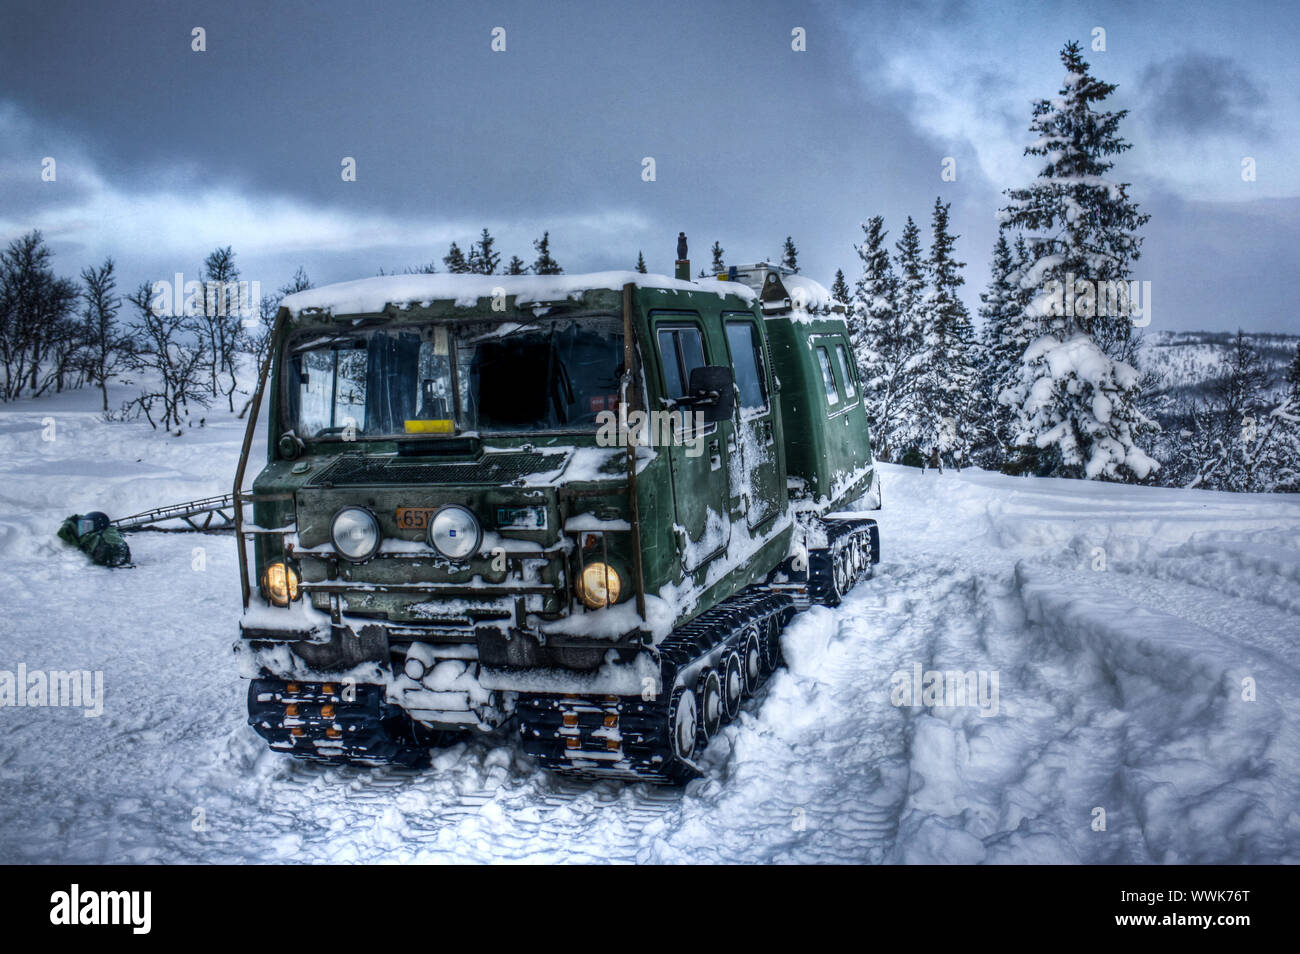 Bandvagn 206, vehículo oruga, cadenas para nieve, hielo Fotografía de stock  - Alamy